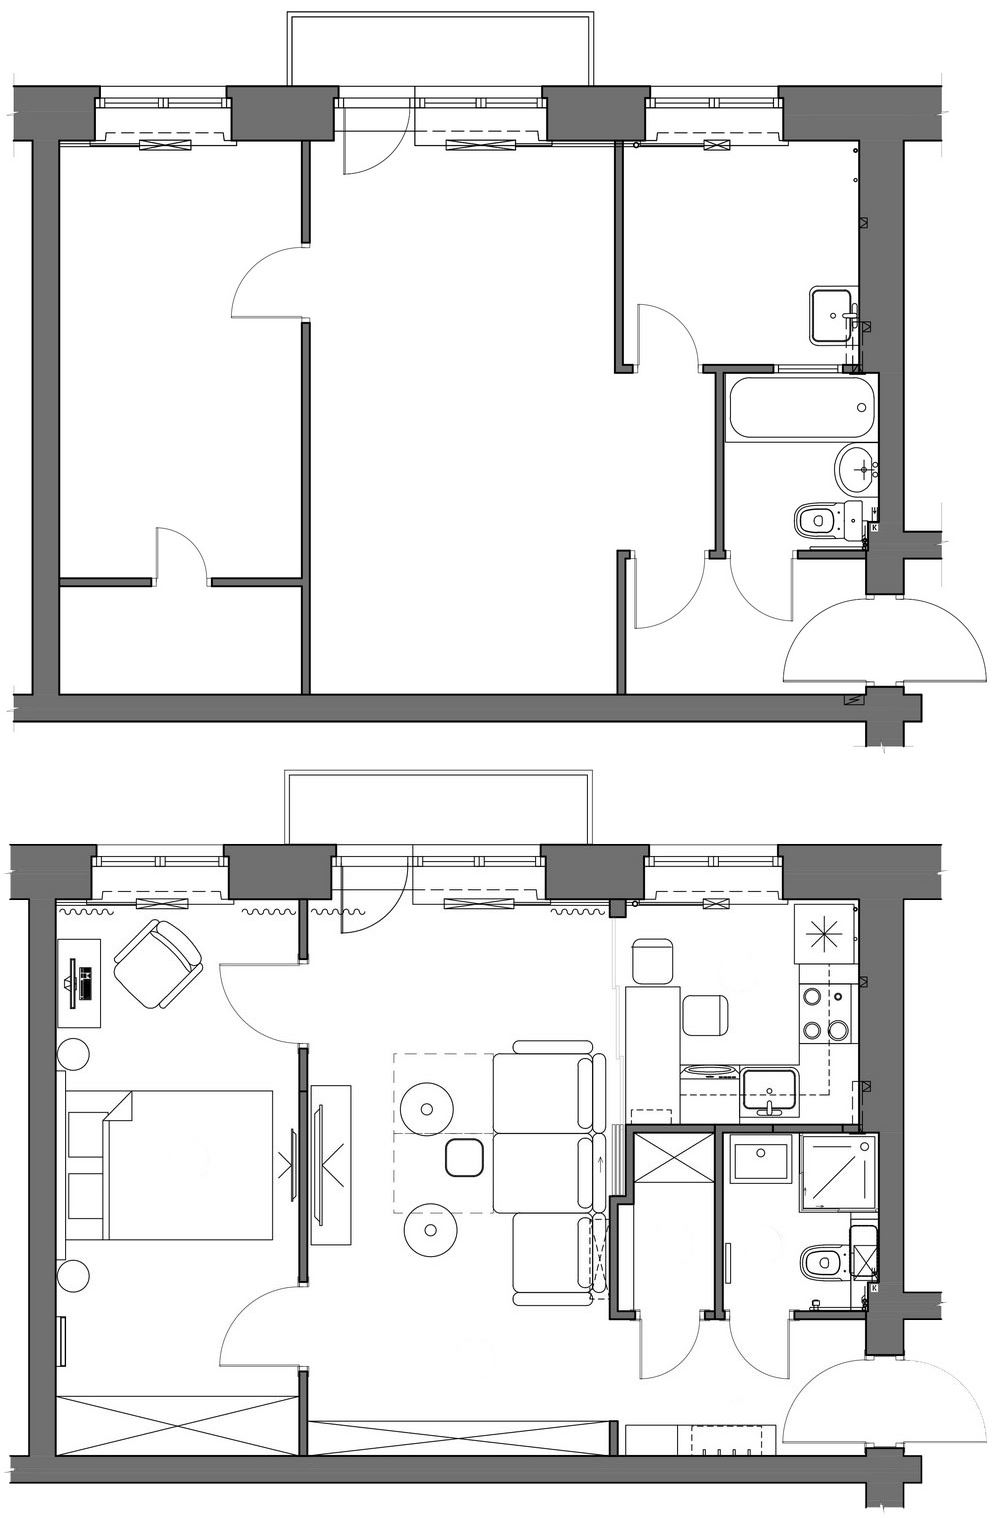 Alaprajz - Fiatal pár kétszobás első otthona - 43m2-es lakás ötemeletes téglaházban, berendezés klasszikus és skandináv elemekkel